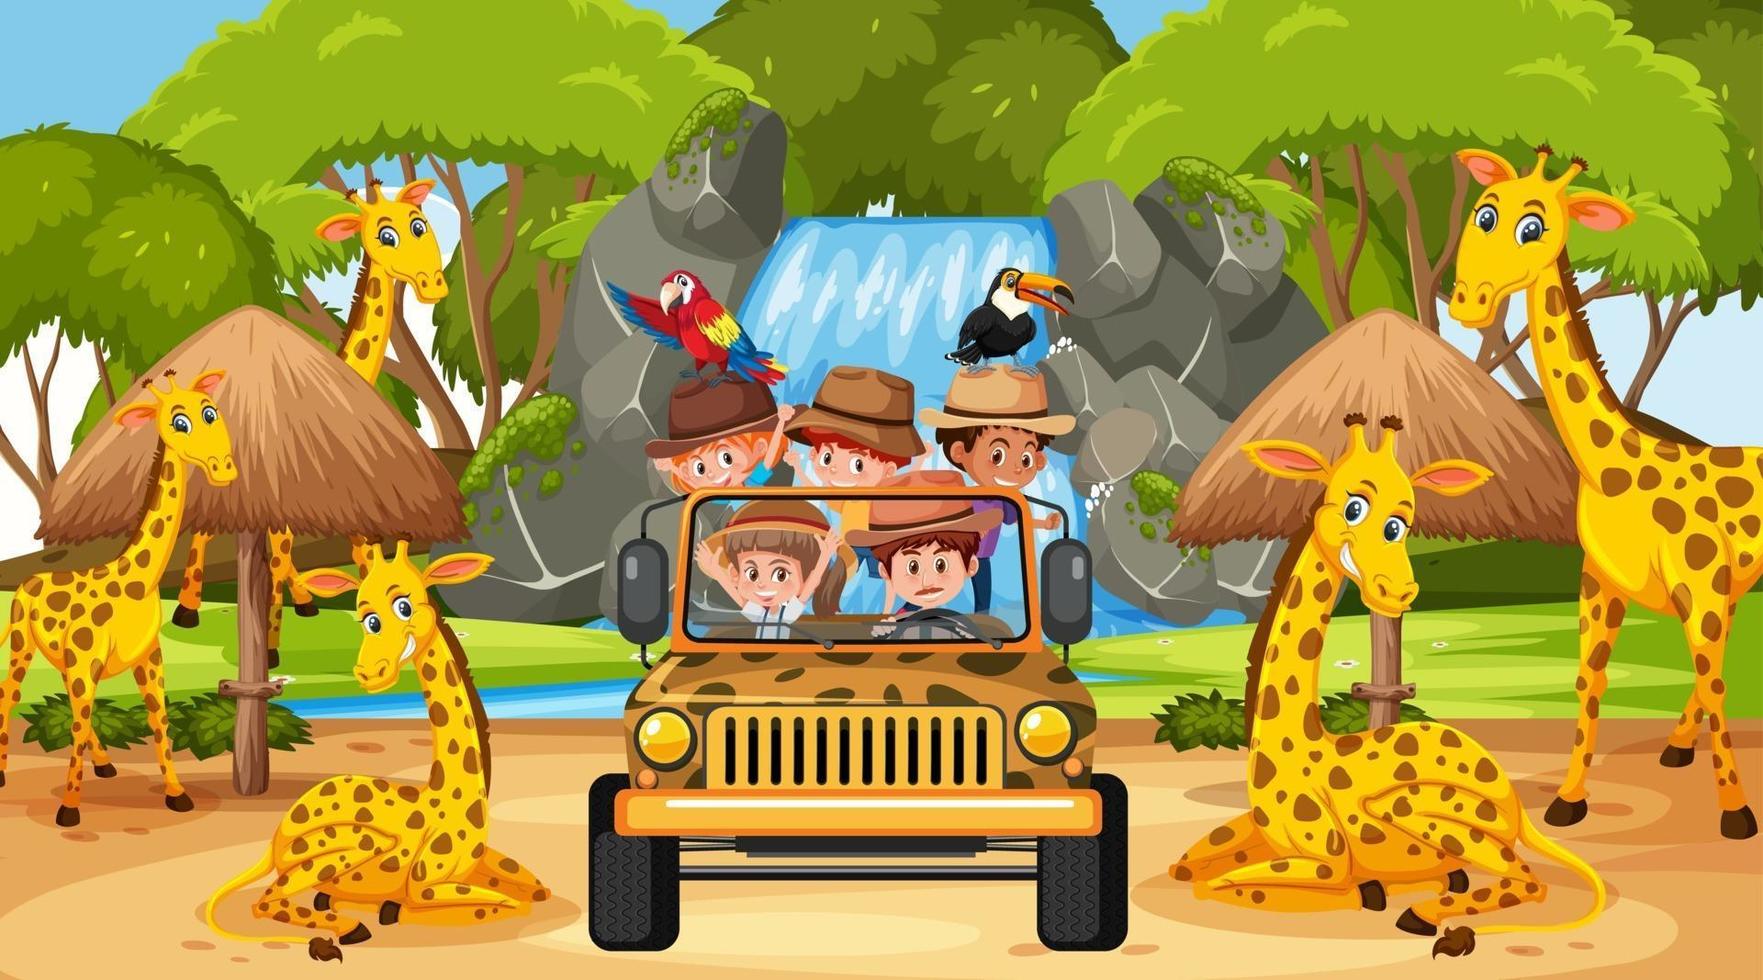 visite pour enfants dans une scène de safari avec de nombreuses girafes vecteur